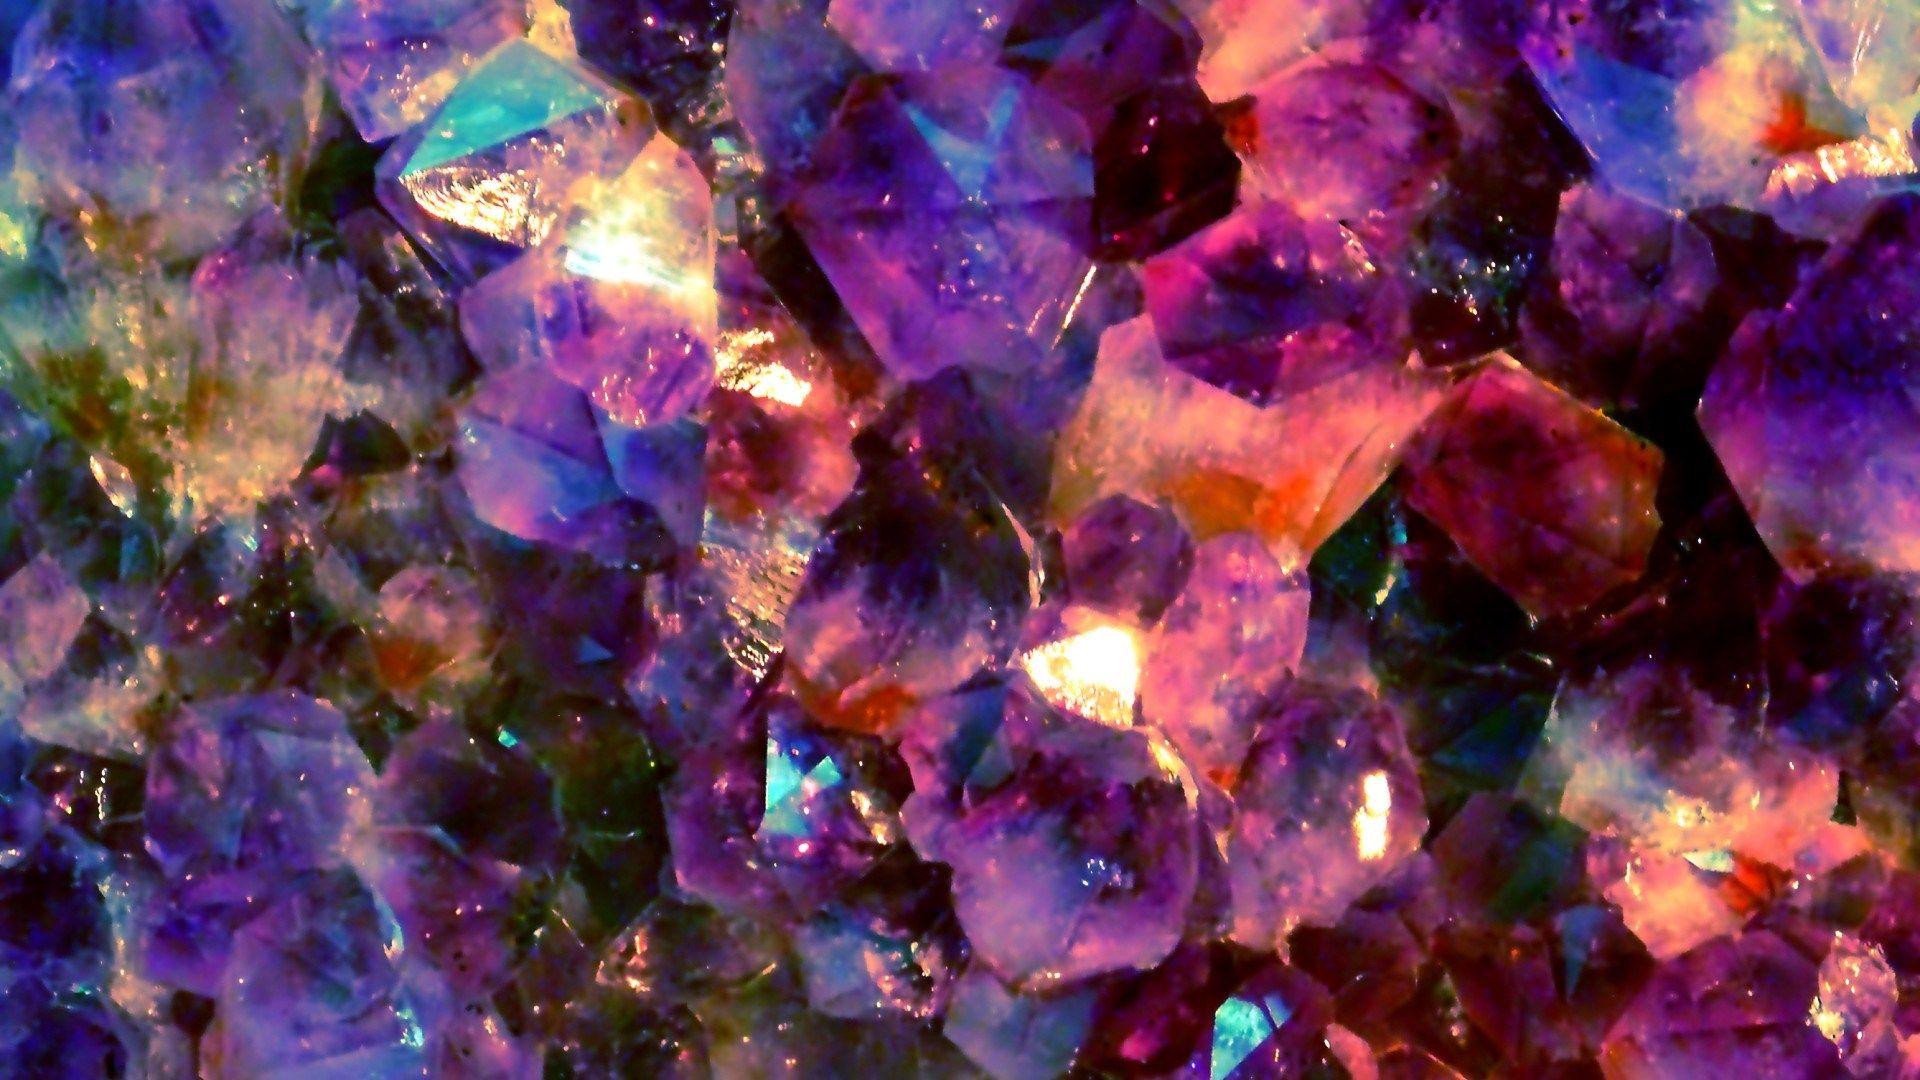 gemstone wallpaper. Minerals & Stones. Ruby gemstone